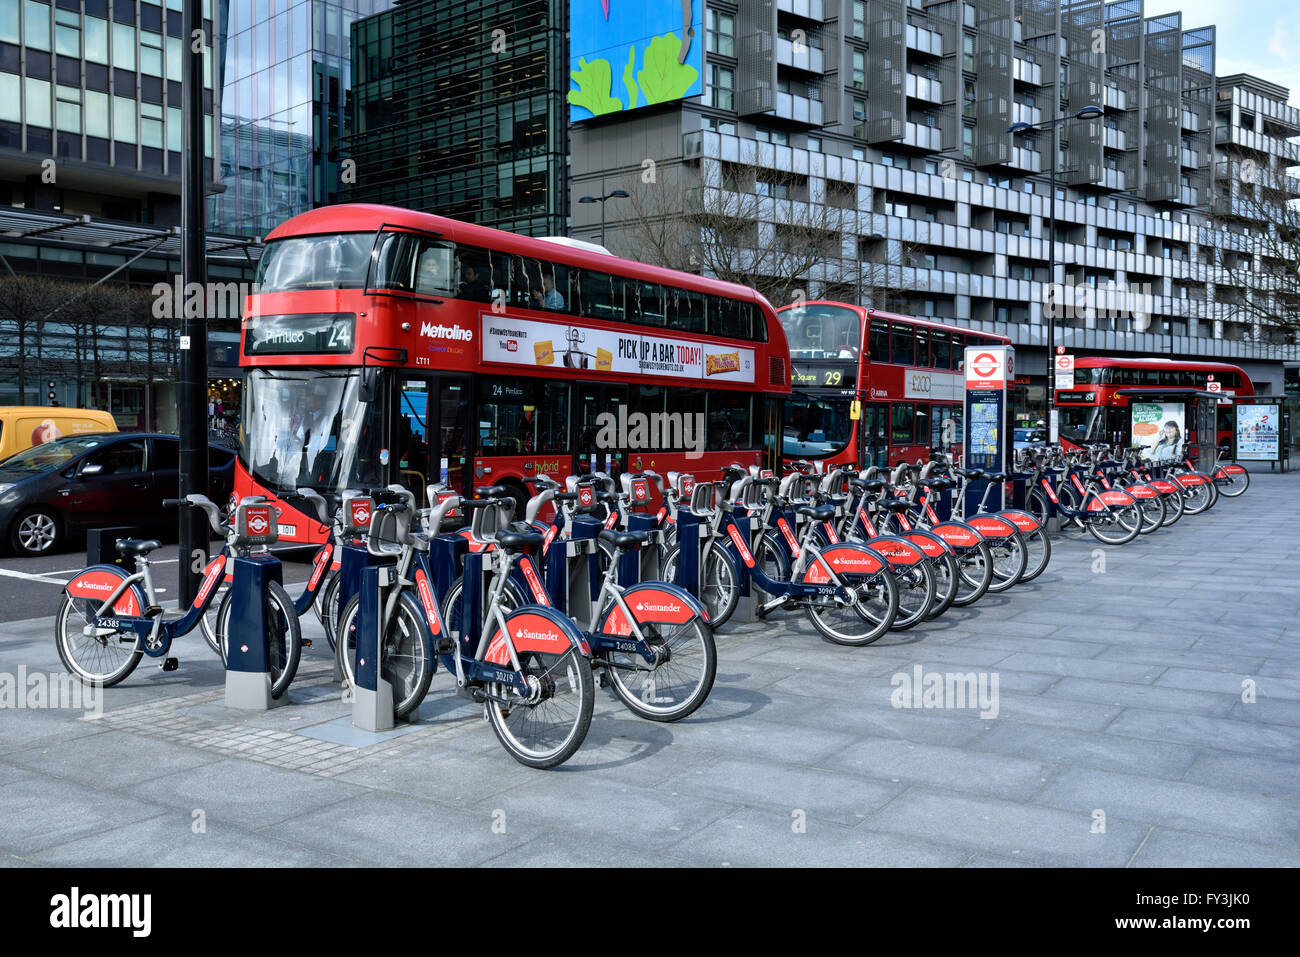 Santander cicli o Boris bike, noleggio biciclette sistema docking station con autobus, angolo di Hampstead Road e Euston Road, Londo Foto Stock